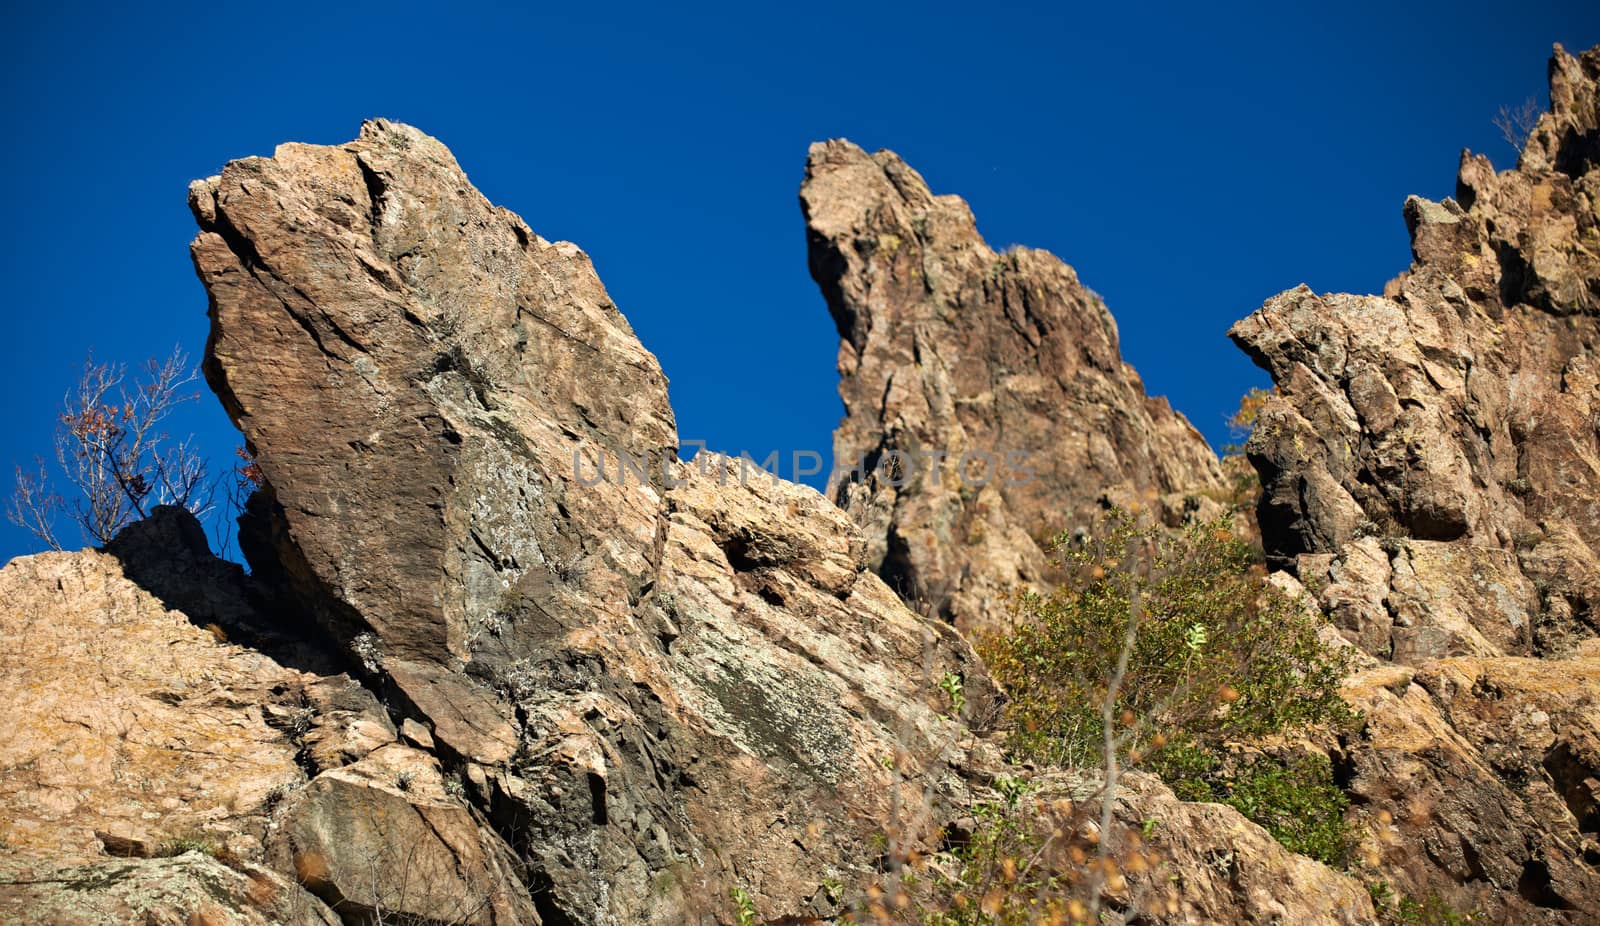 Mountain rocks near Sliven, Bulgaria